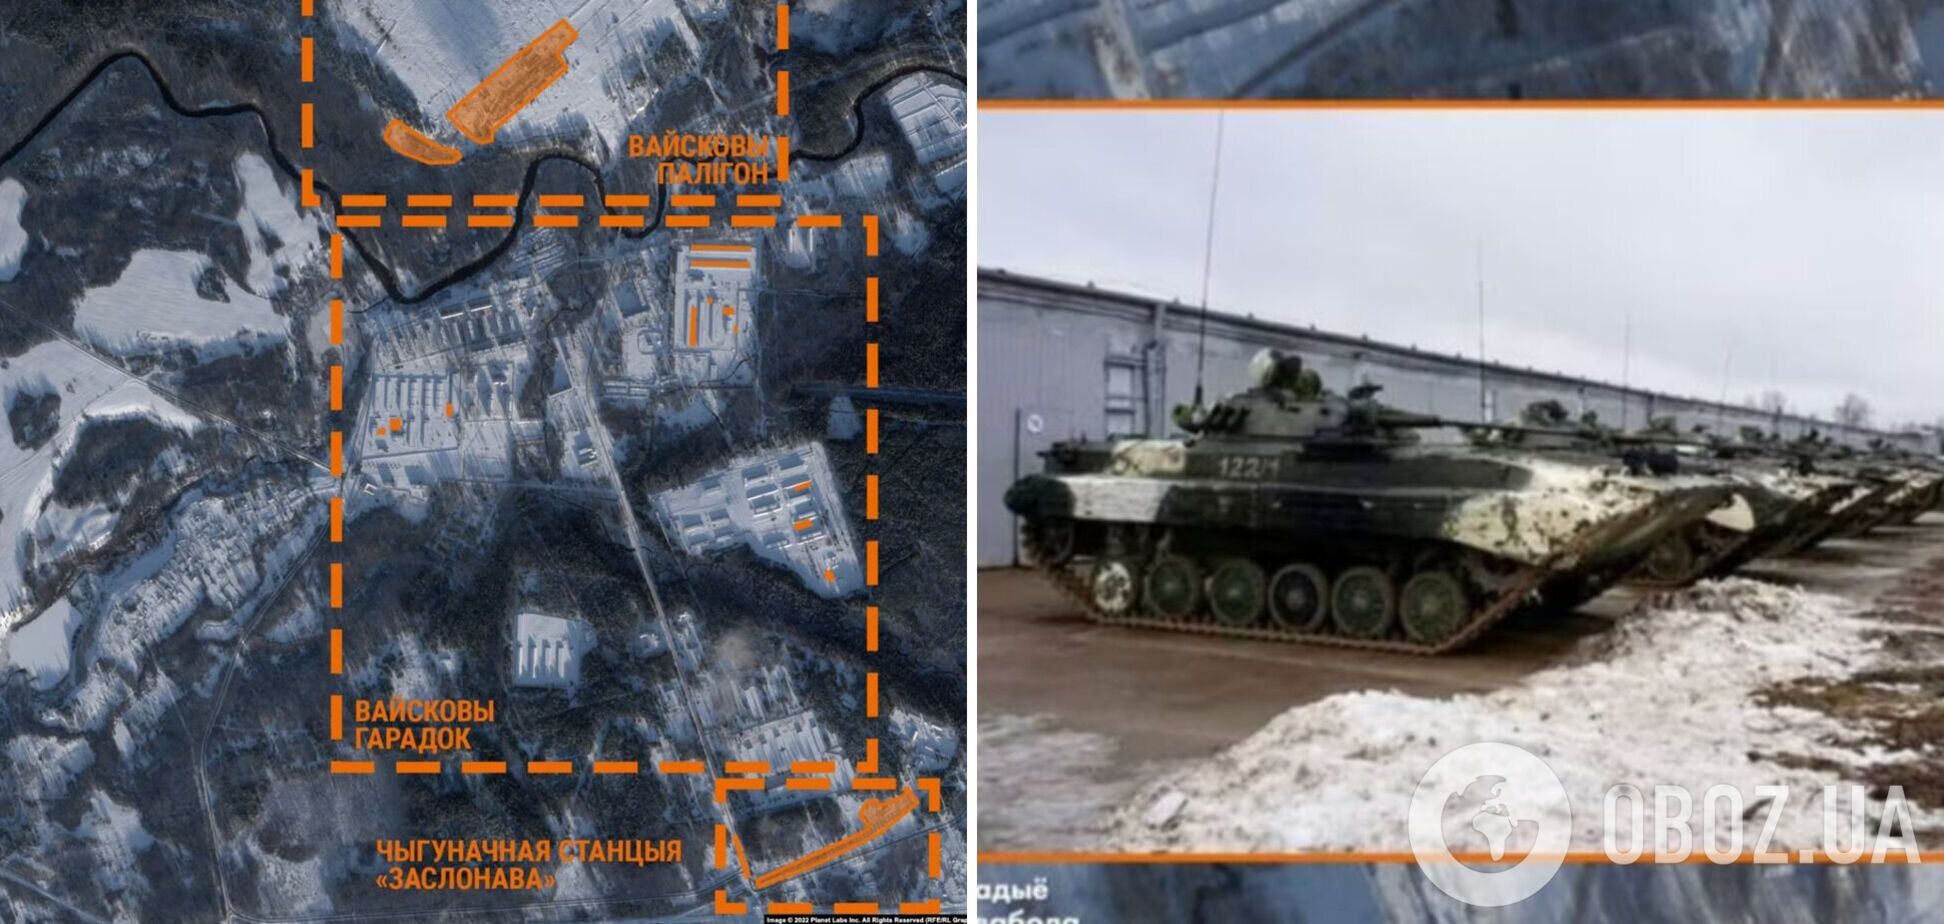 З'явилися супутникові знімки полігону у Білорусі, де дислокуються російські військові: туди стягнули багато техніки